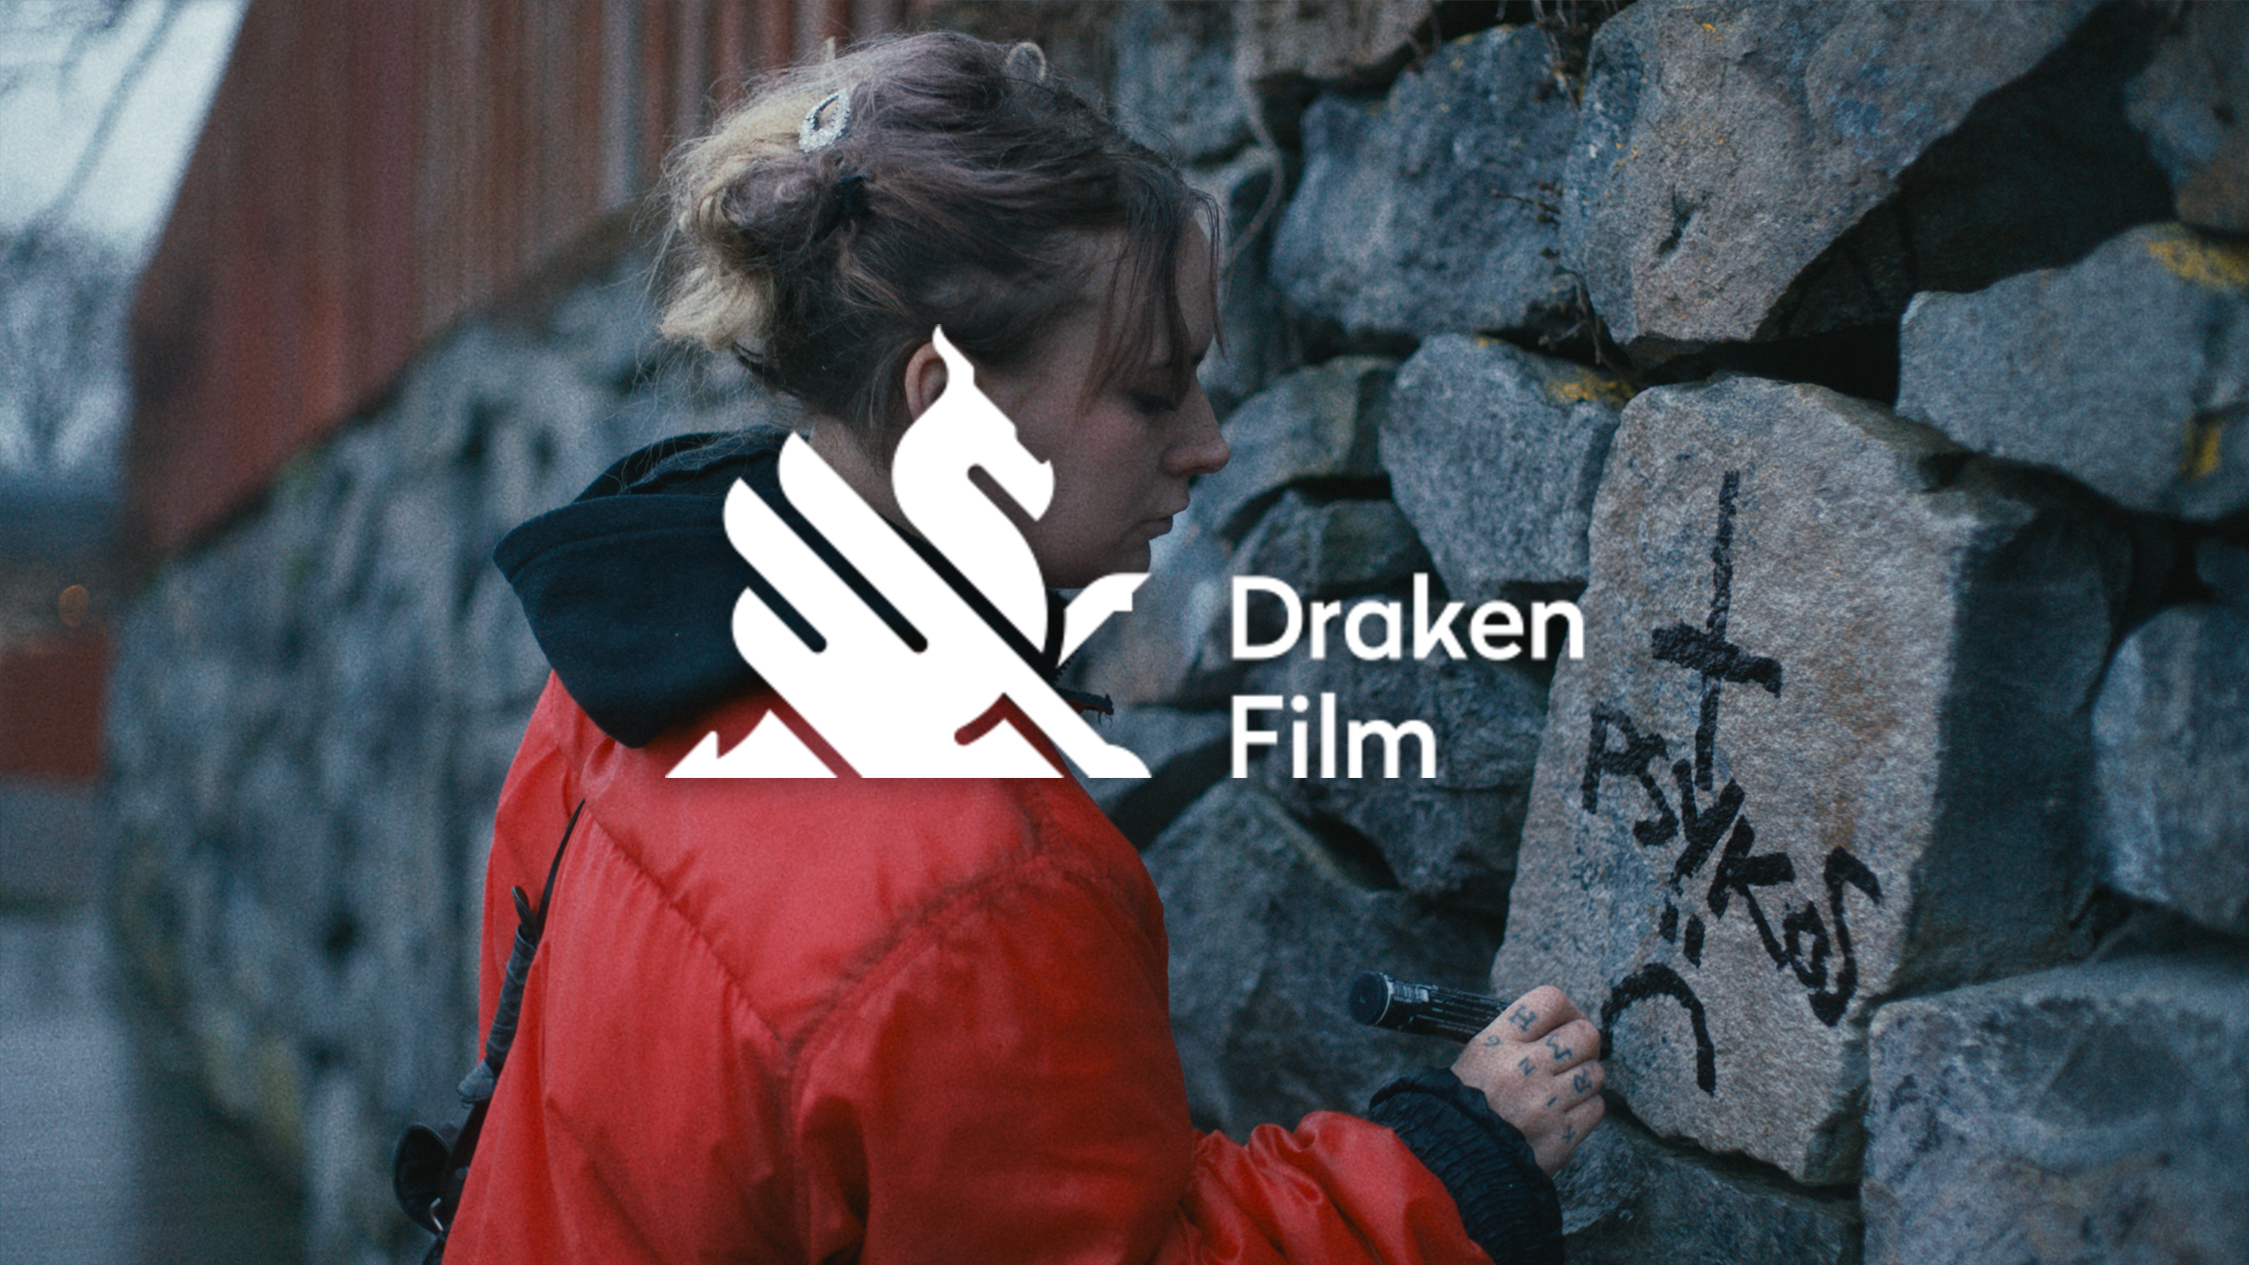 Draken Film